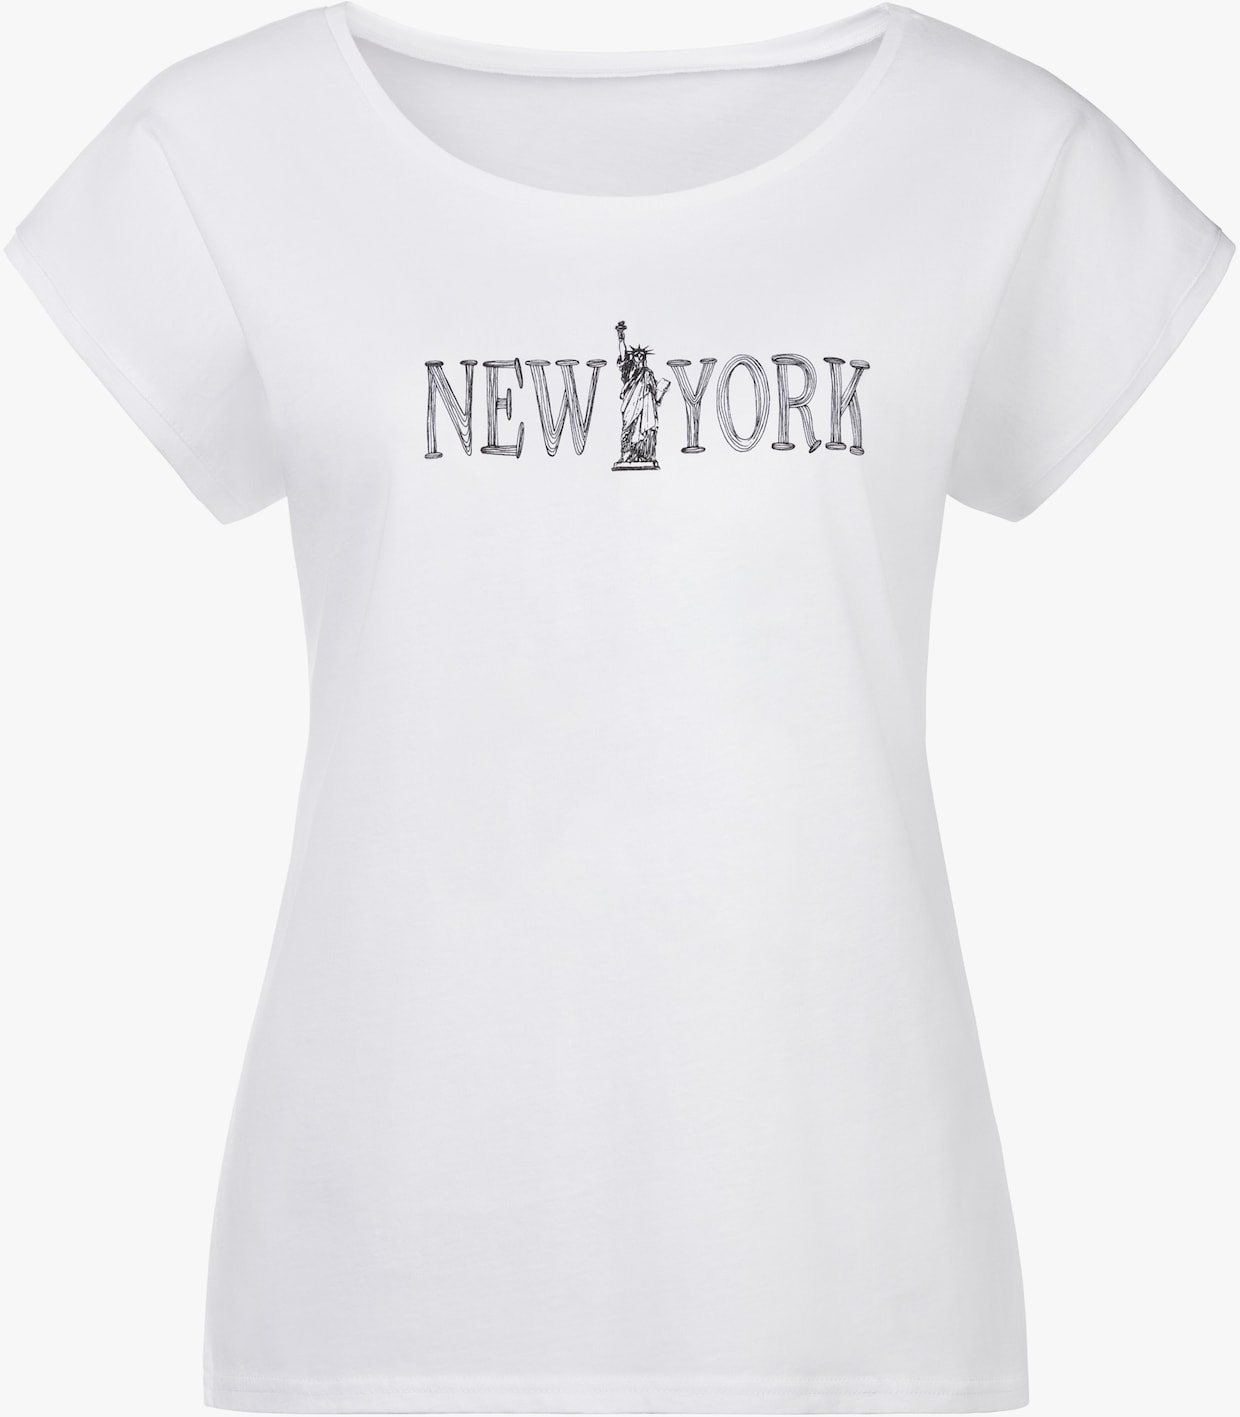 Vivance T-Shirt - weiß, schwarz